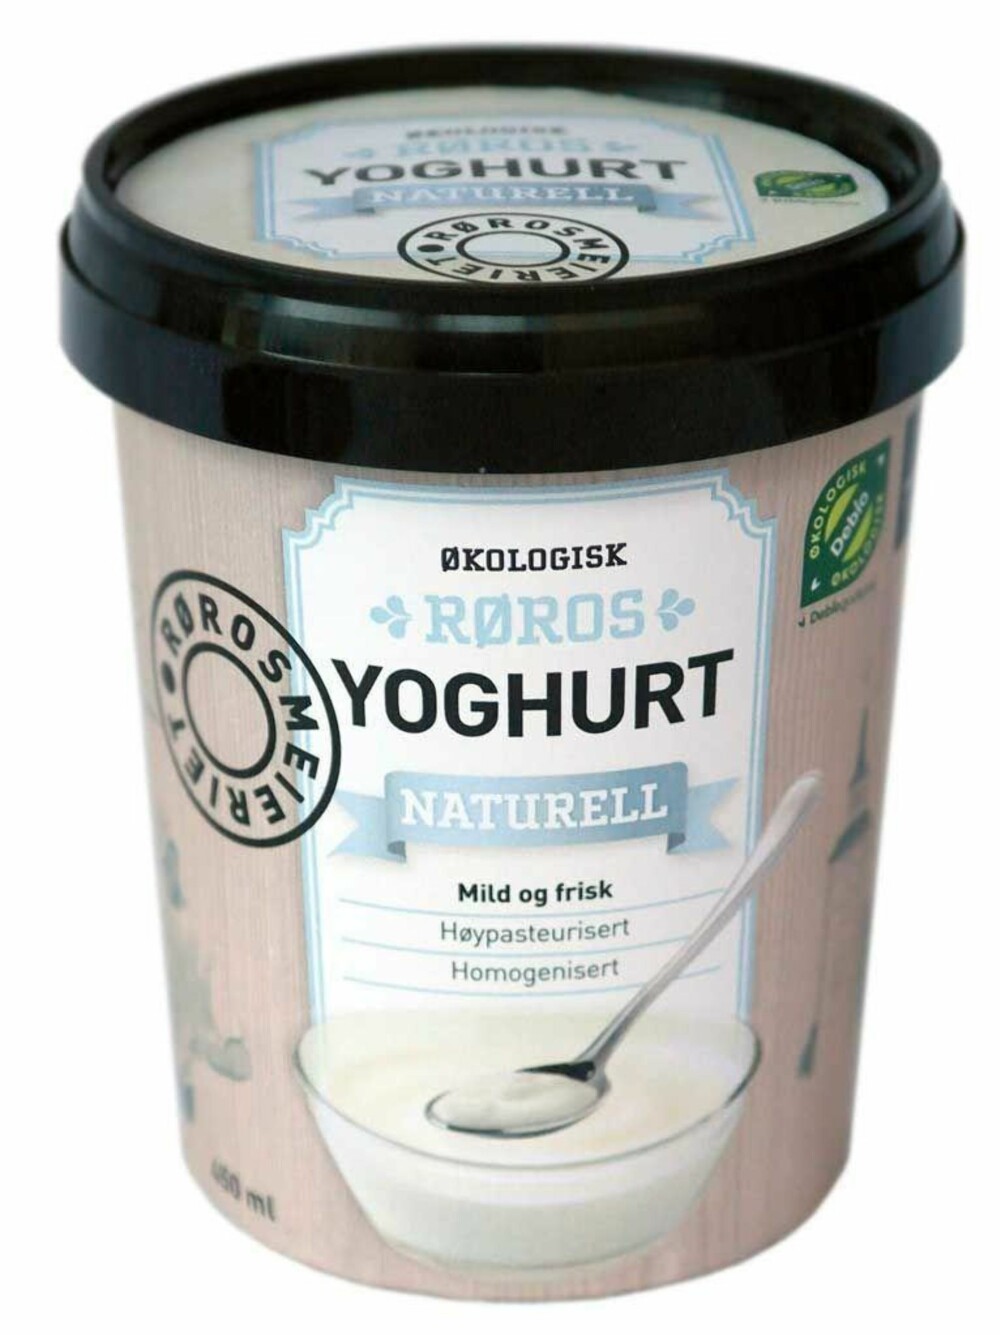 NY YOGHURT: Økologisk, naturell yoghurt kommer i butikk.